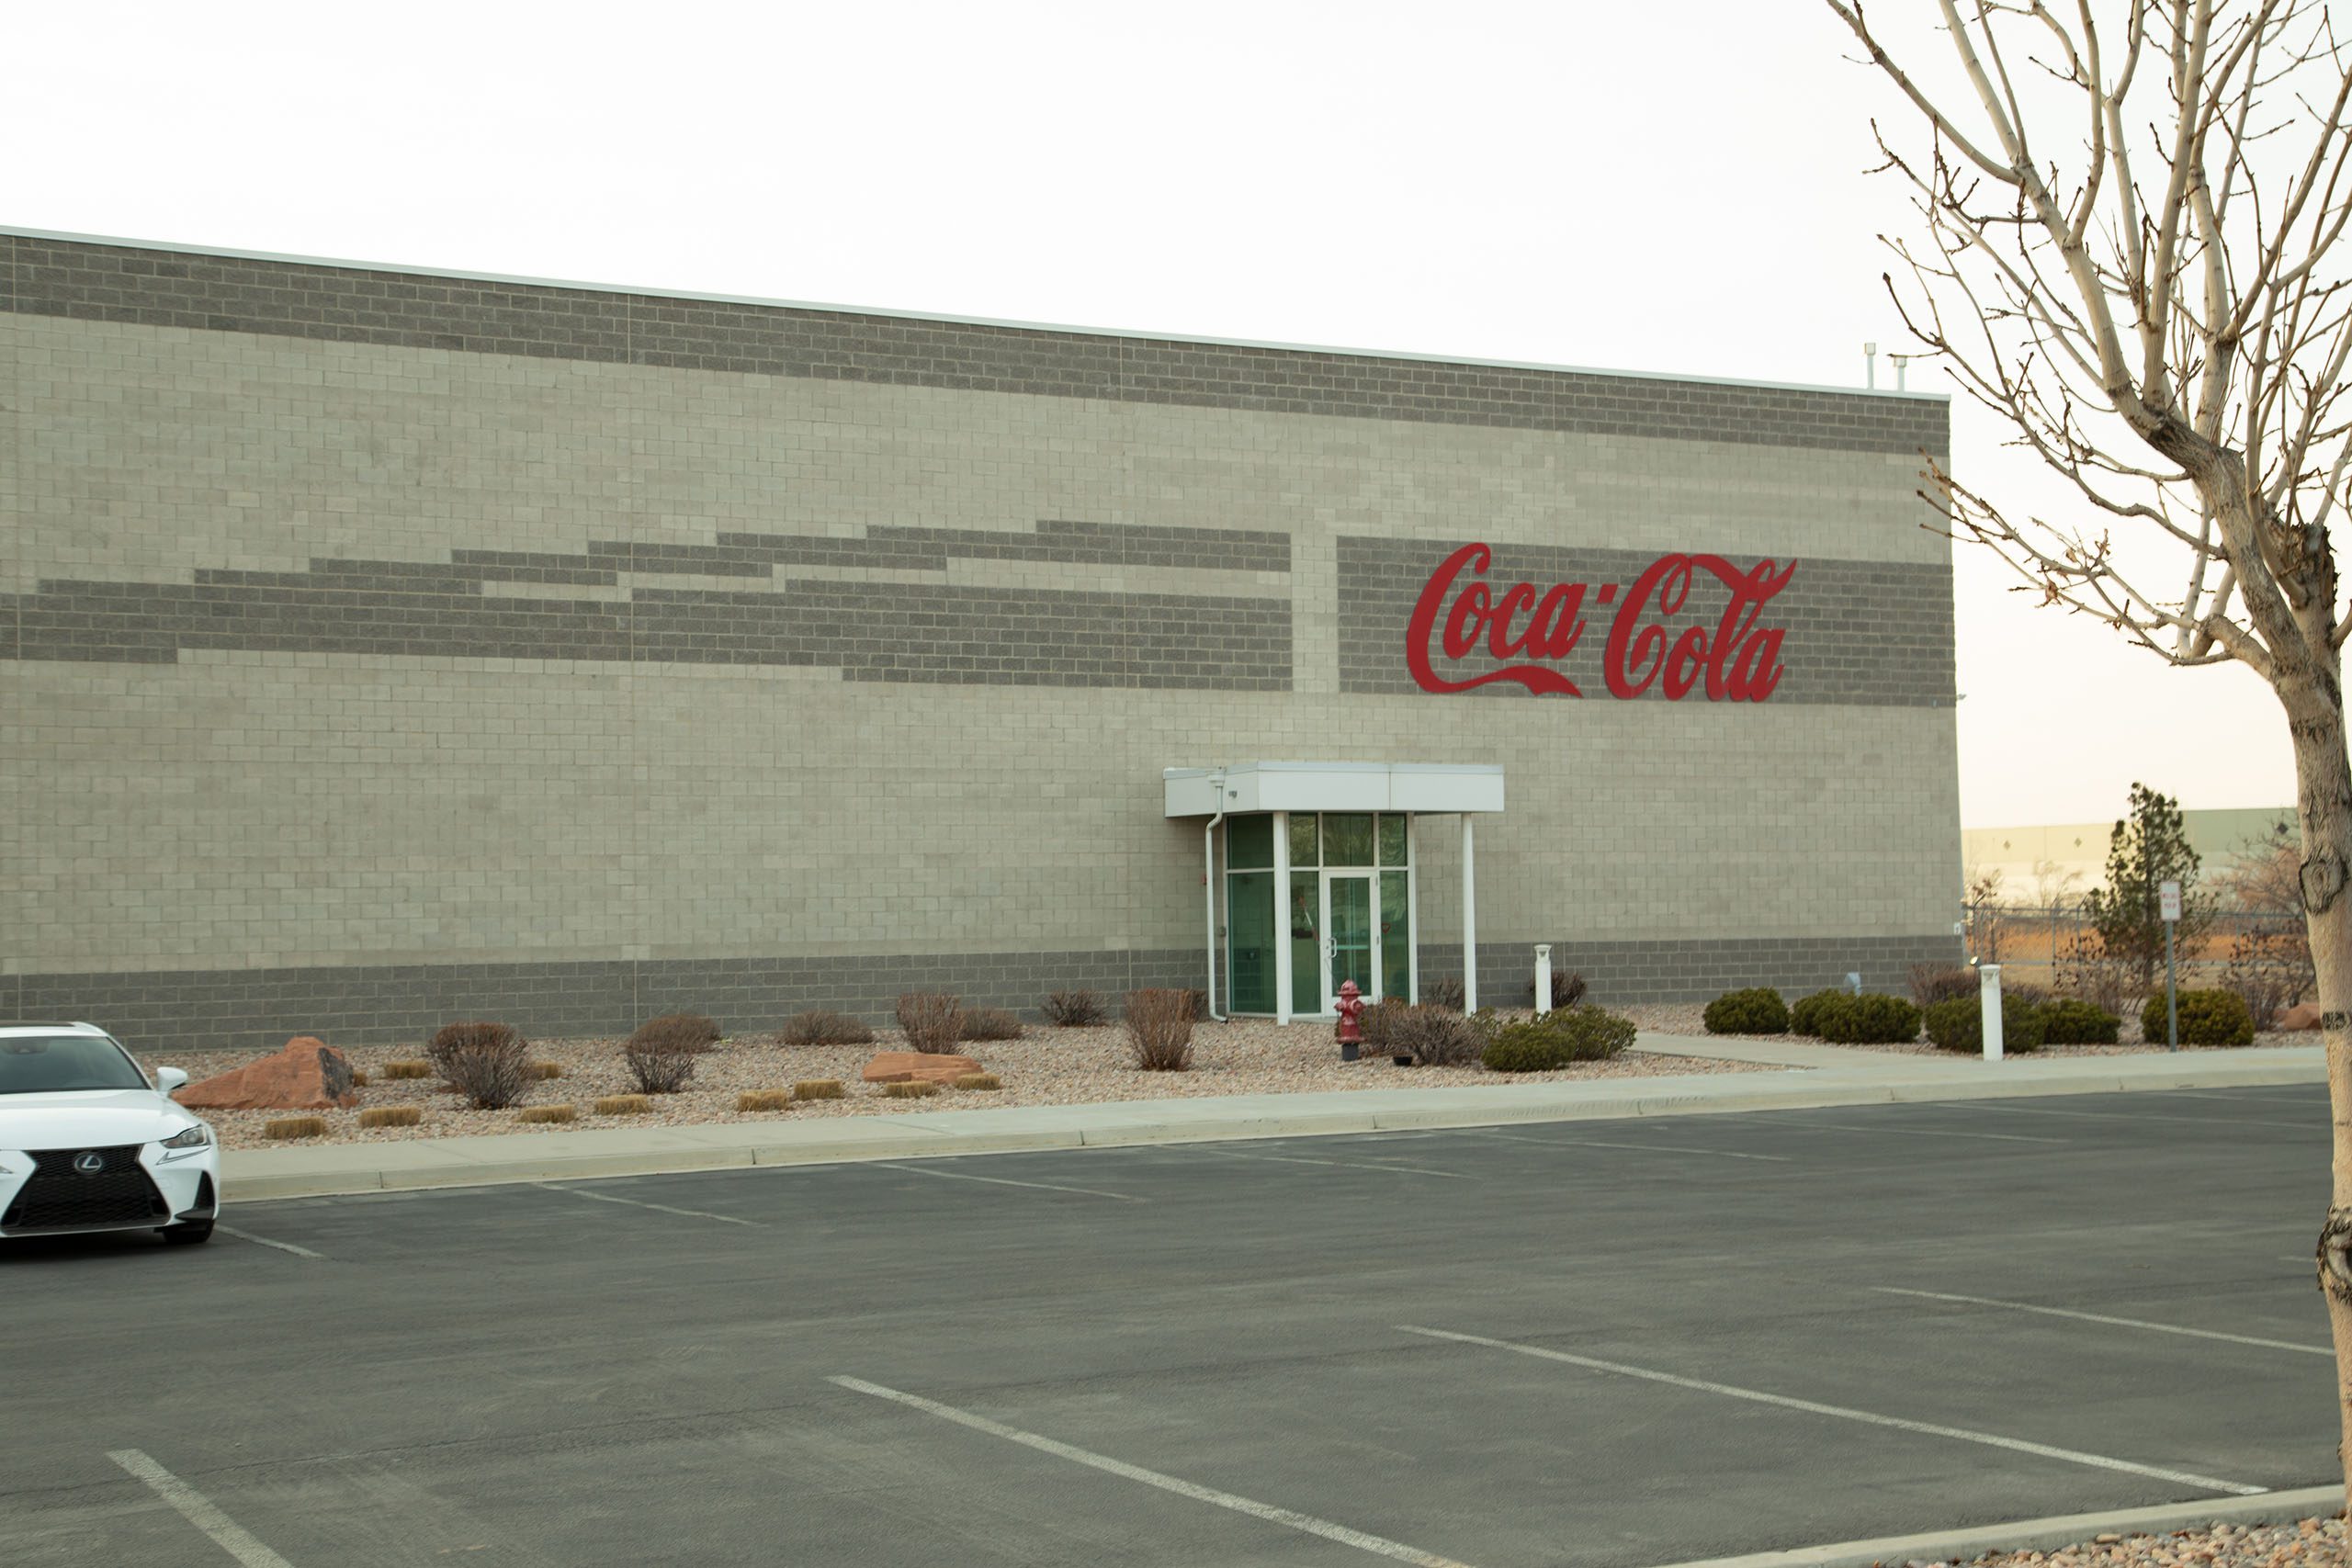 Coca-Cola building